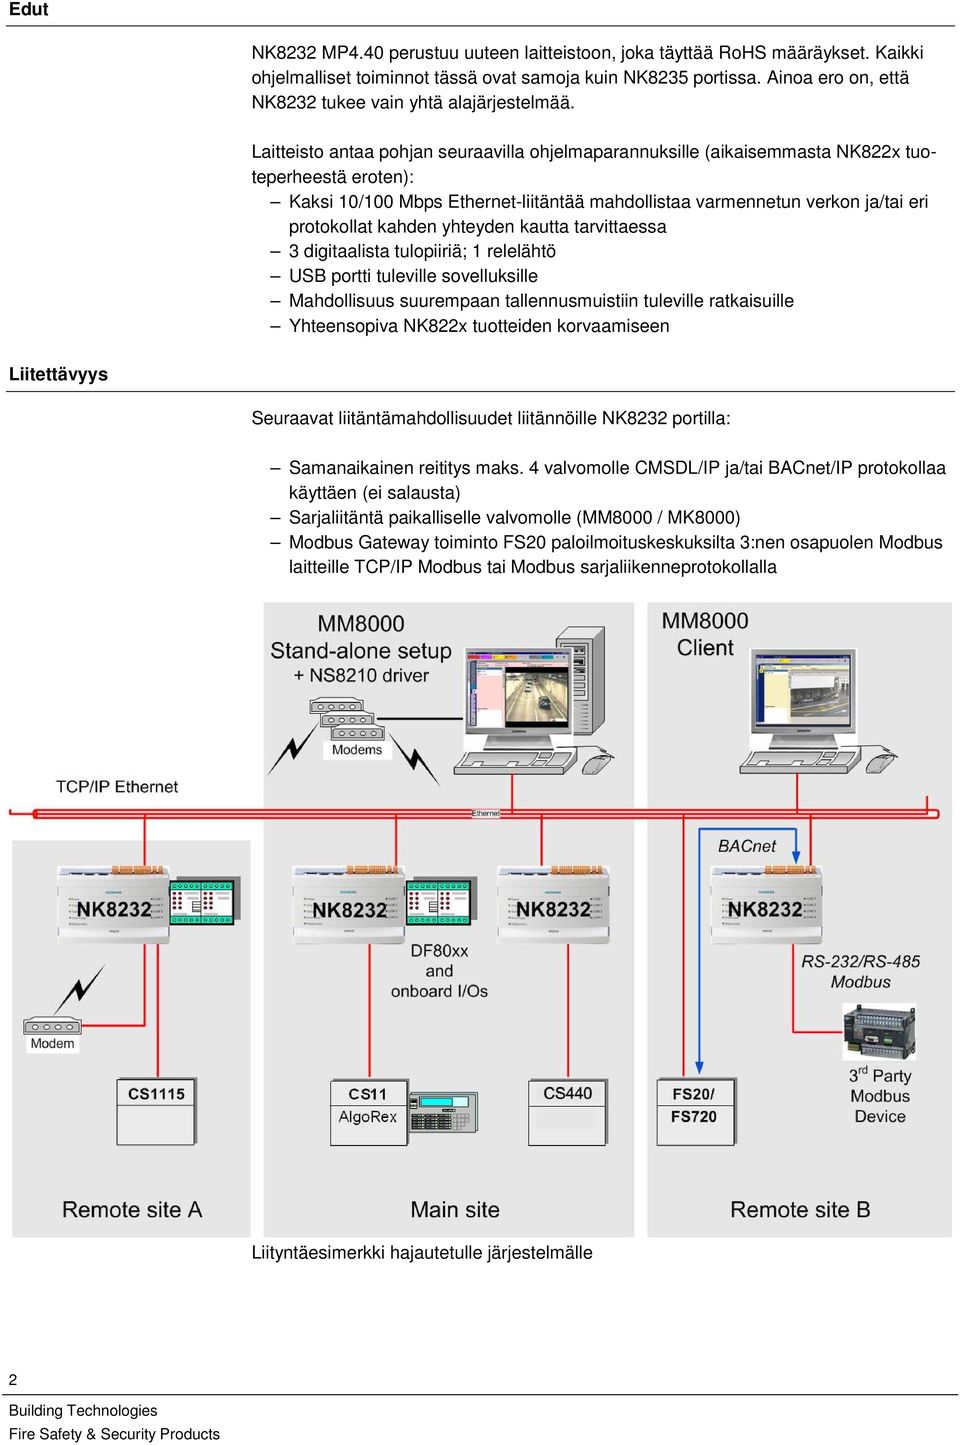 Laitteisto antaa pohjan seuraavilla ohjelmaparannuksille (aikaisemmasta NK822x tuoteperheestä eroten): Kaksi 10/100 Mbps Ethernet-liitäntää mahdollistaa varmennetun verkon ja/tai eri protokollat